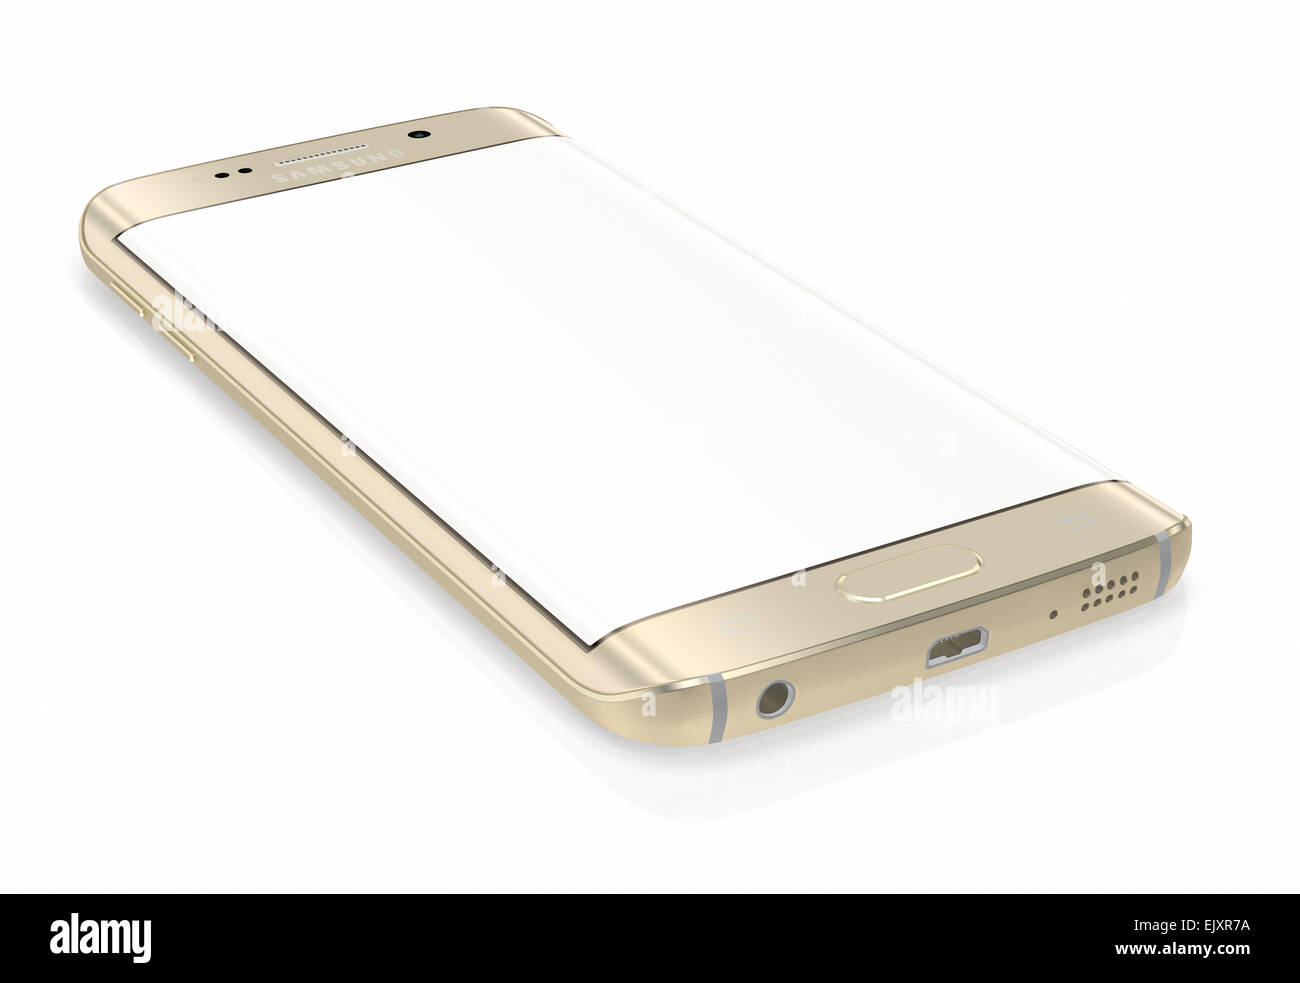 Samsung Galaxy S6 Bordo è il primo dispositivo con doppio vetro curvo display Foto Stock